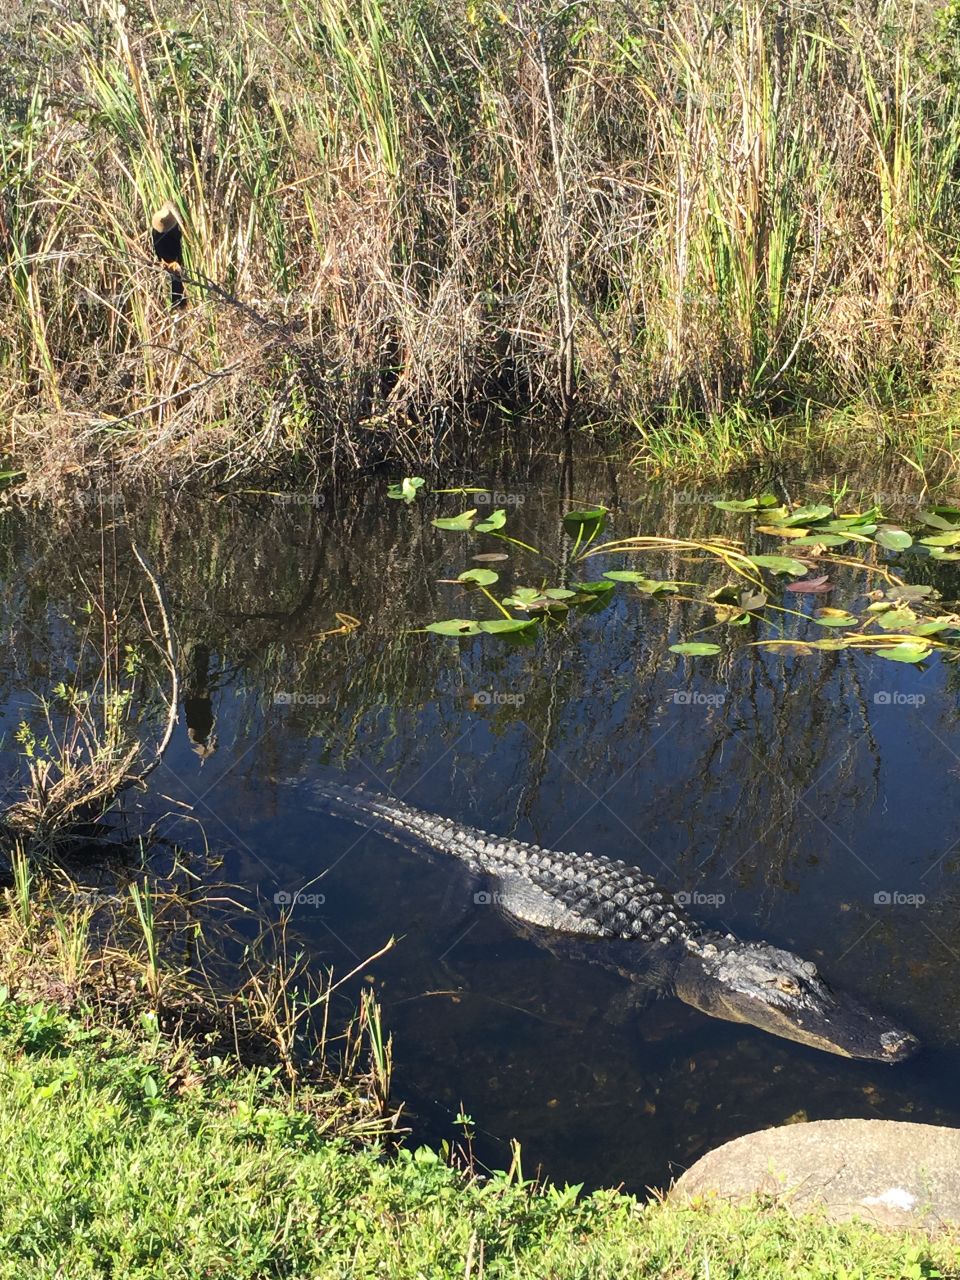 Alligator in the Everglades of Florida. 